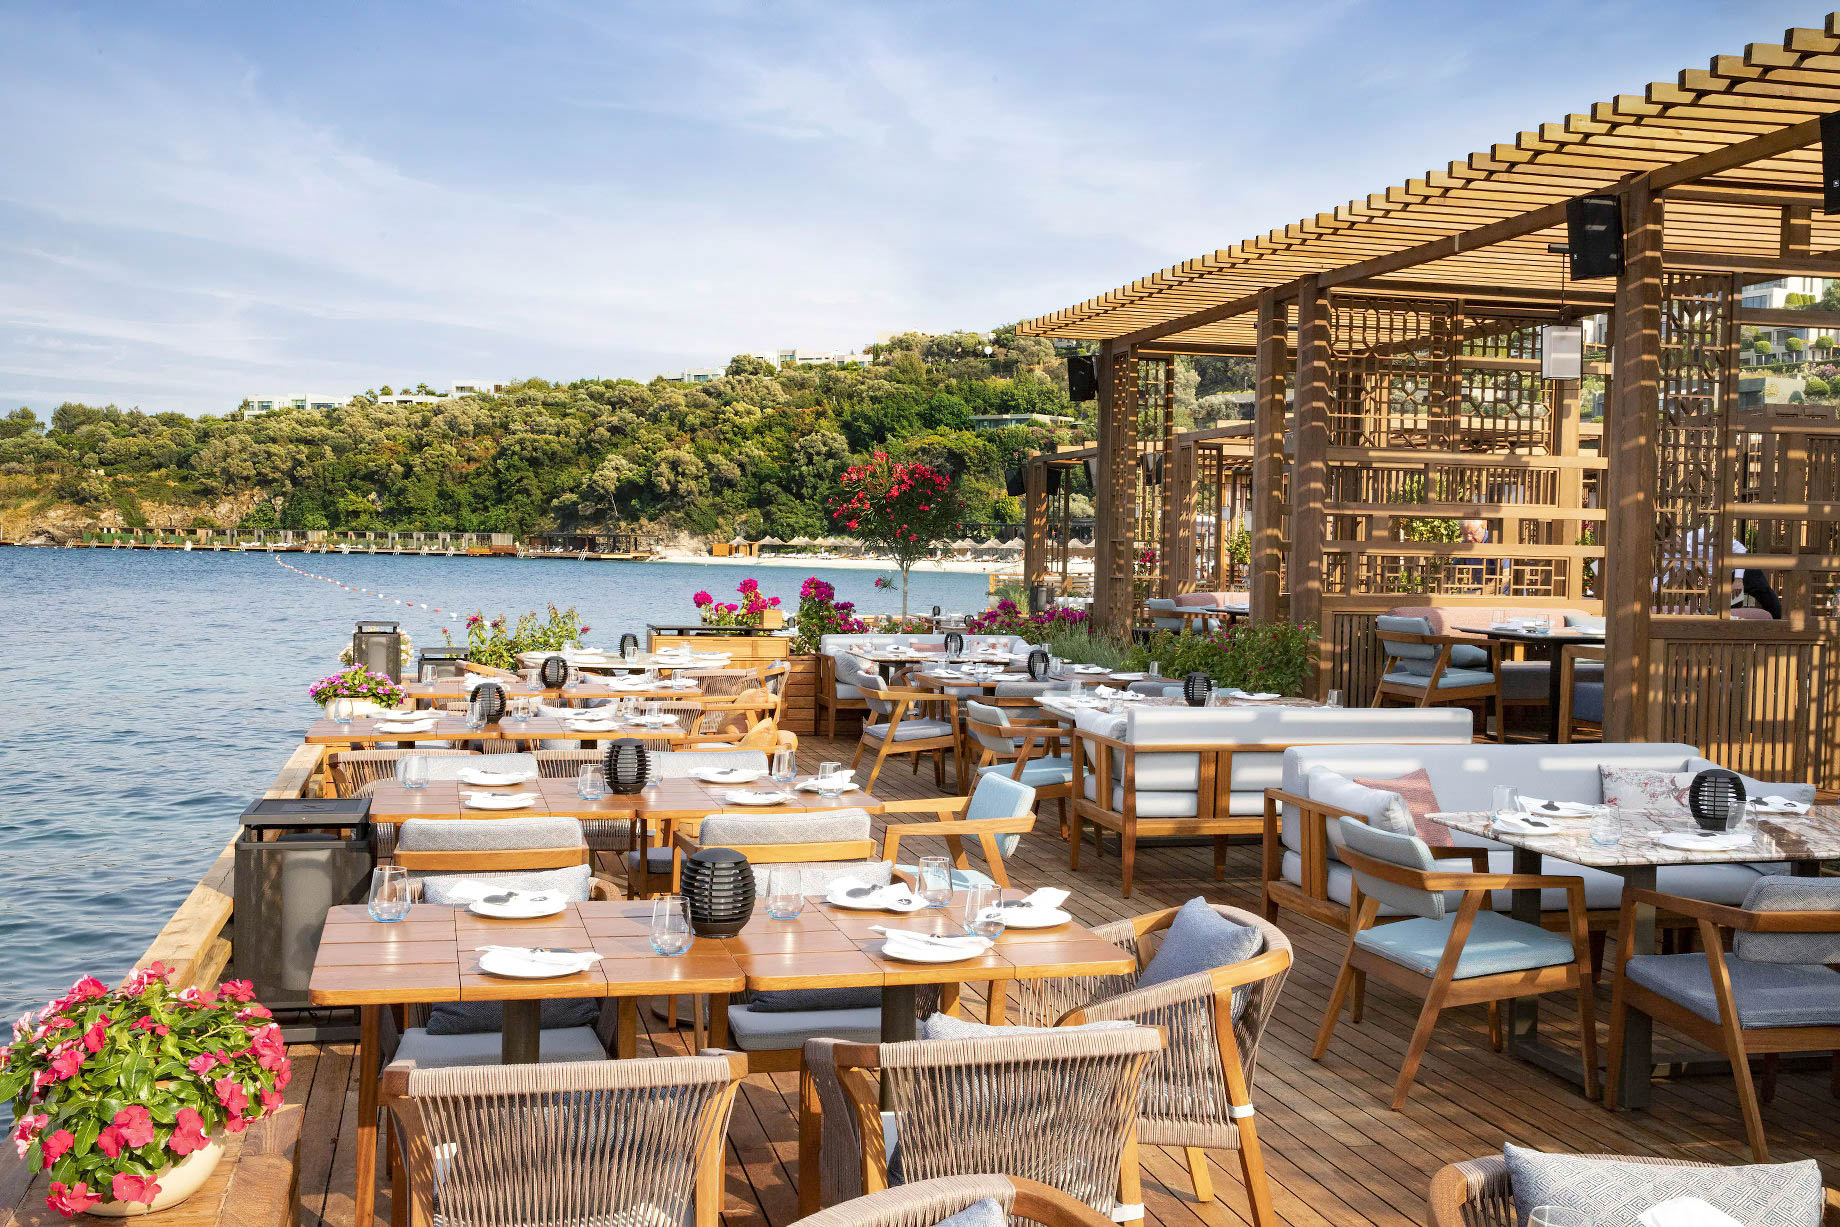 Mandarin Oriental, Bodrum Hotel – Bodrum, Turkey – Hakkasan Restaurant Terrace